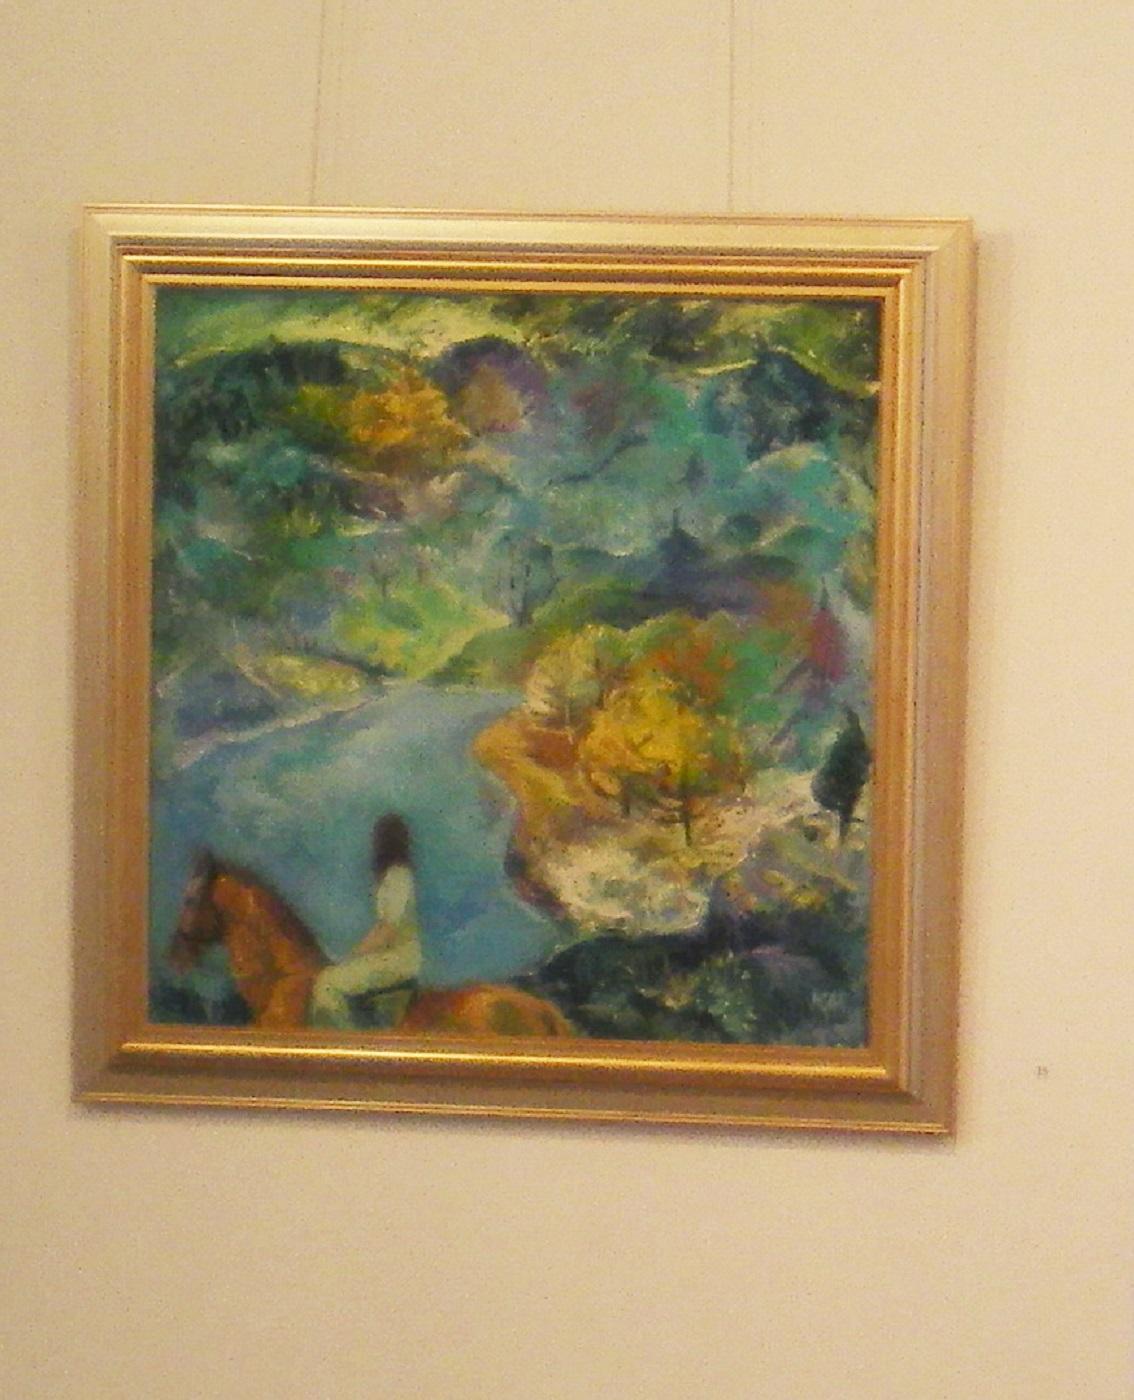 Présence émotionnelle - Paysage Peinture à l'huile Couleurs Jaune Brown Vert Blanc Bleu - Painting de Krasimira Mihailova